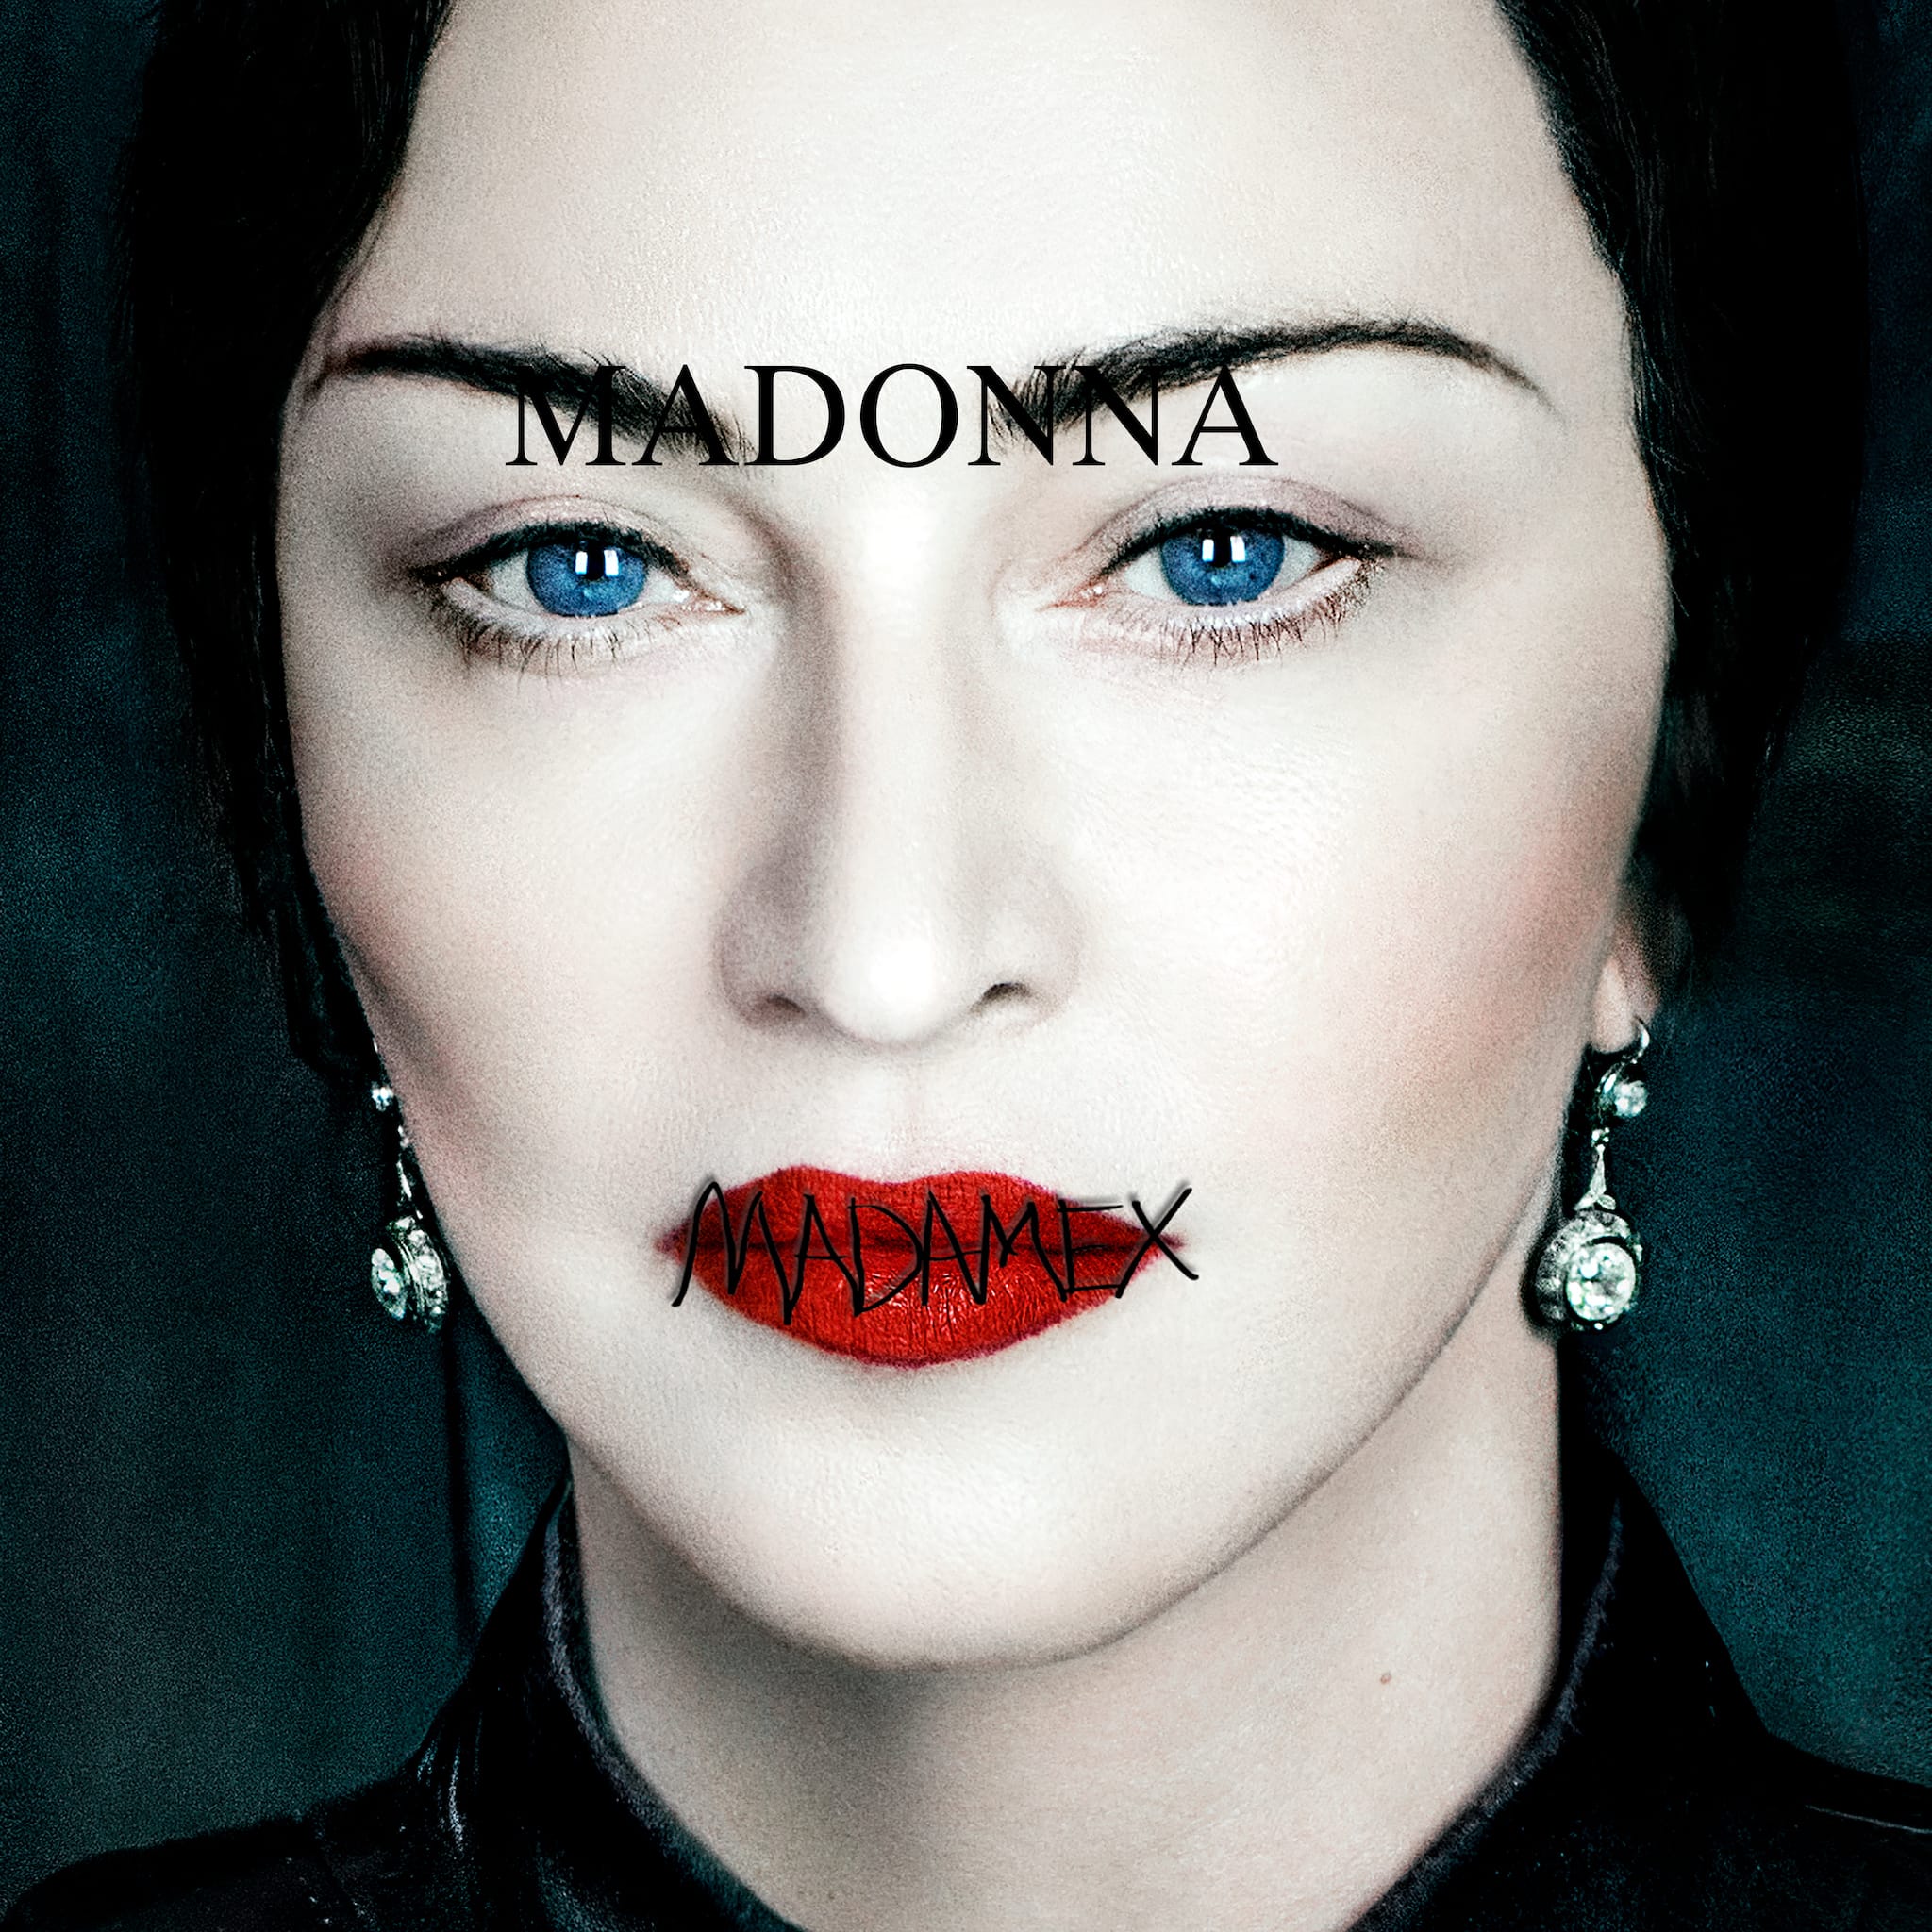 madonna-image-pochette-album-madame-x-st